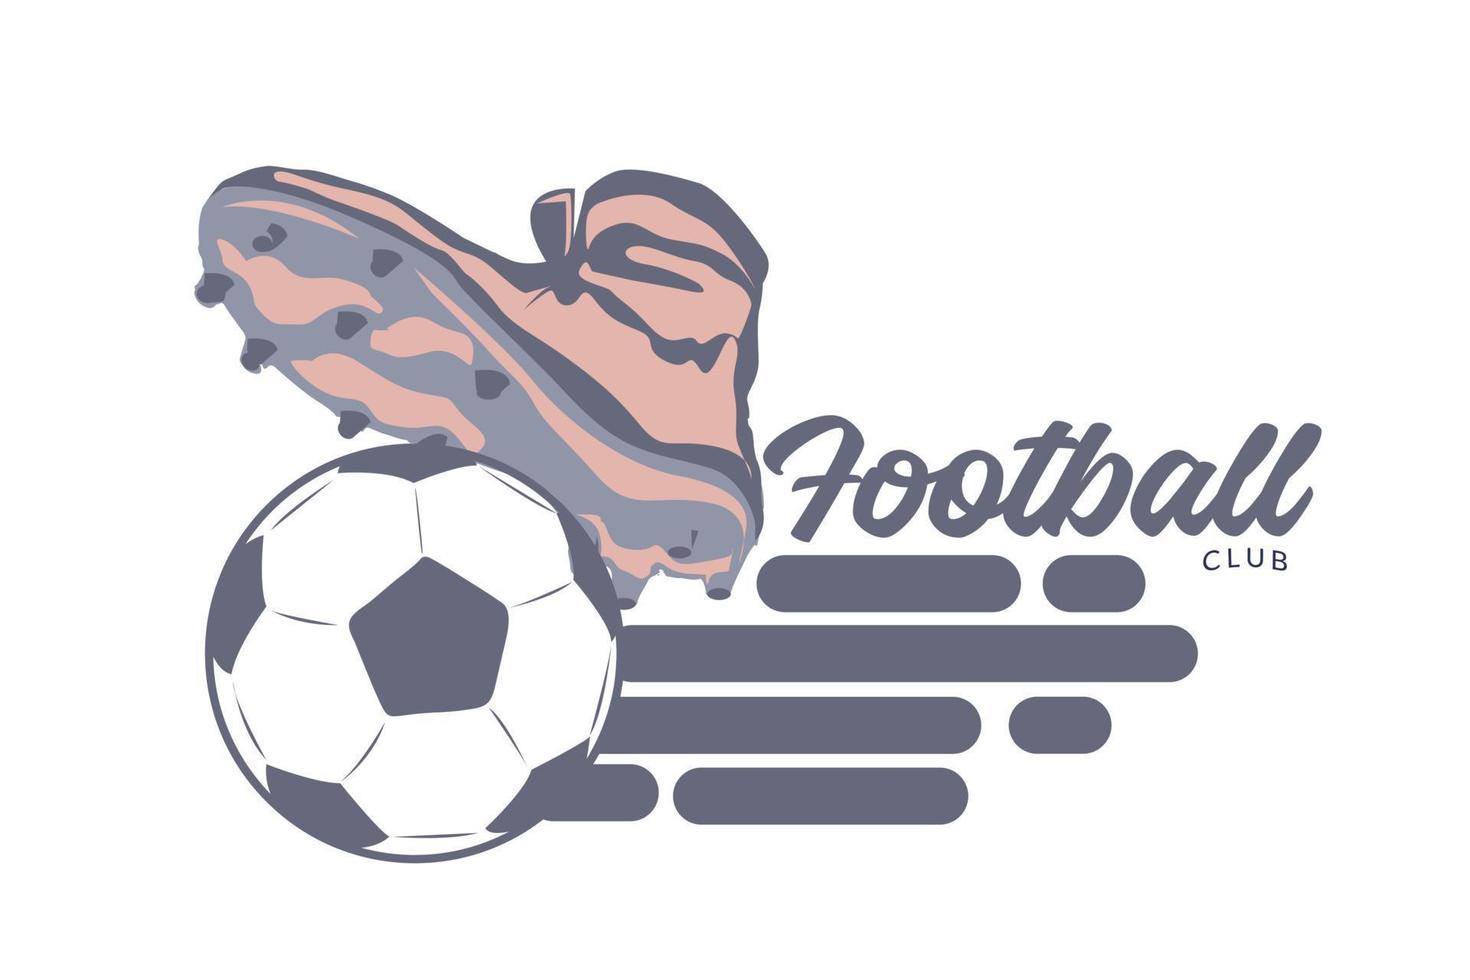 boll och fotboll sko vektor illustration. sport konkurrens design begrepp. eps 10 vektor.